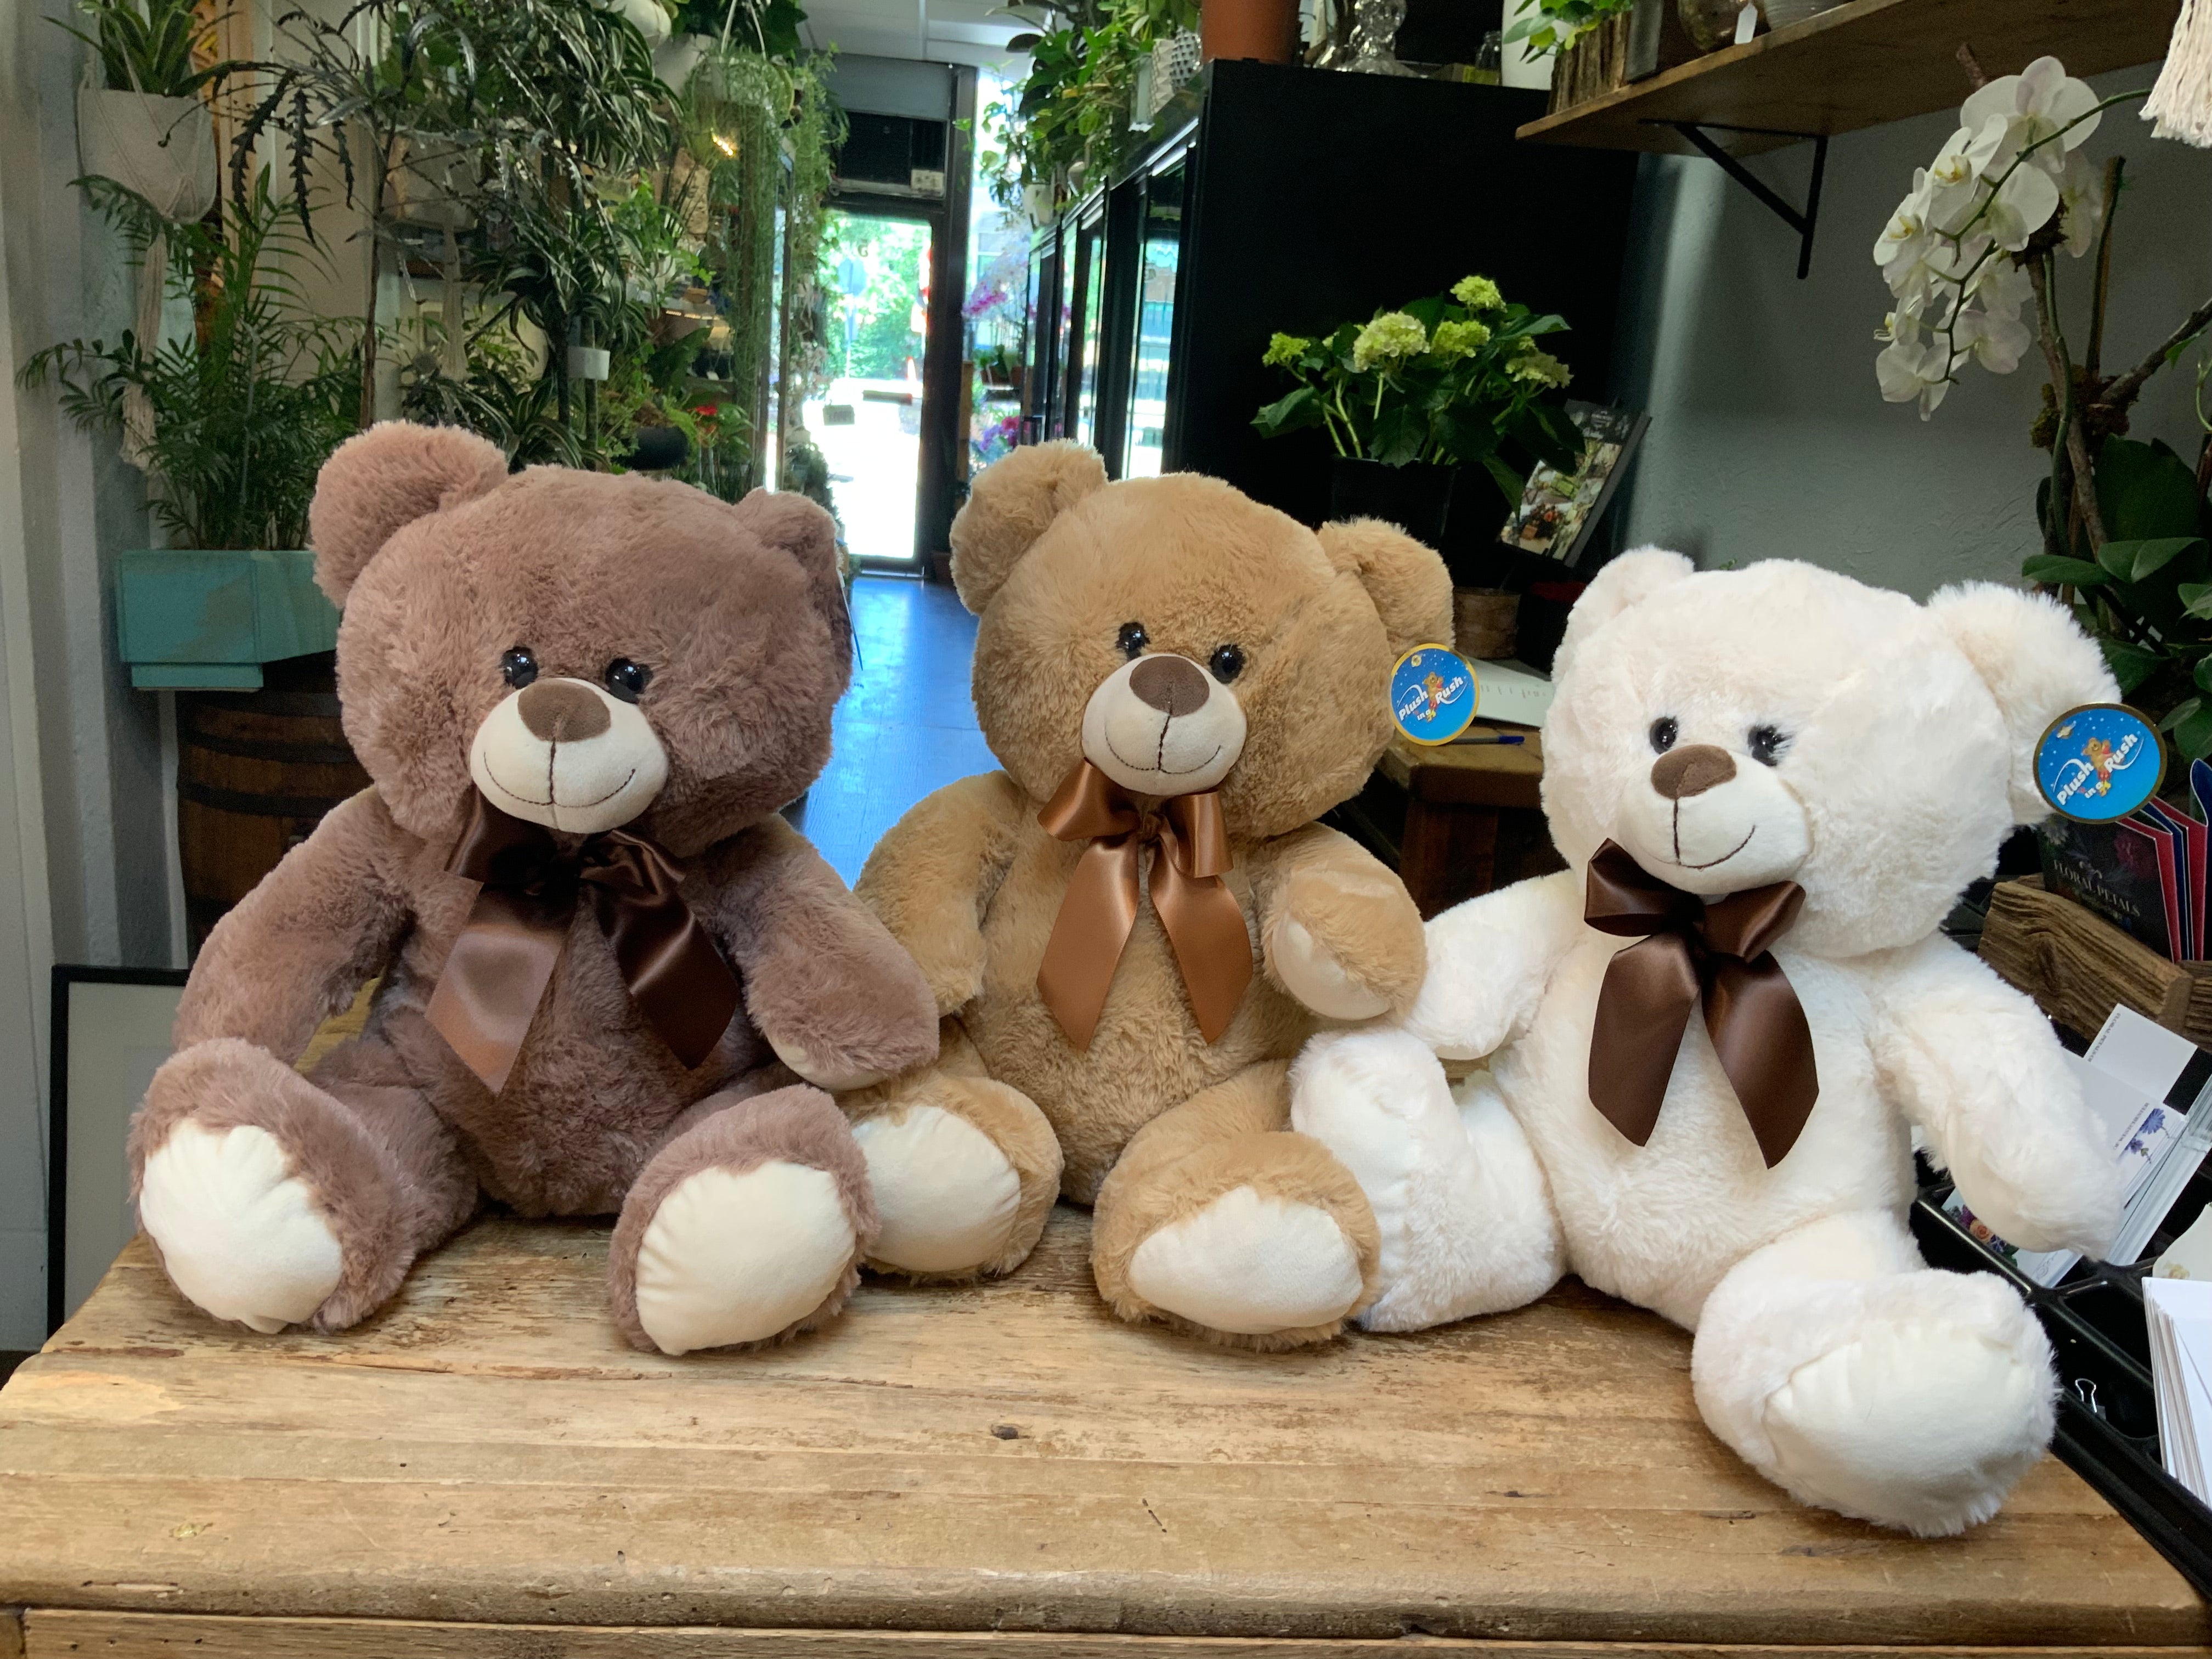 Cuddly Soft-Plush Teddy Bears